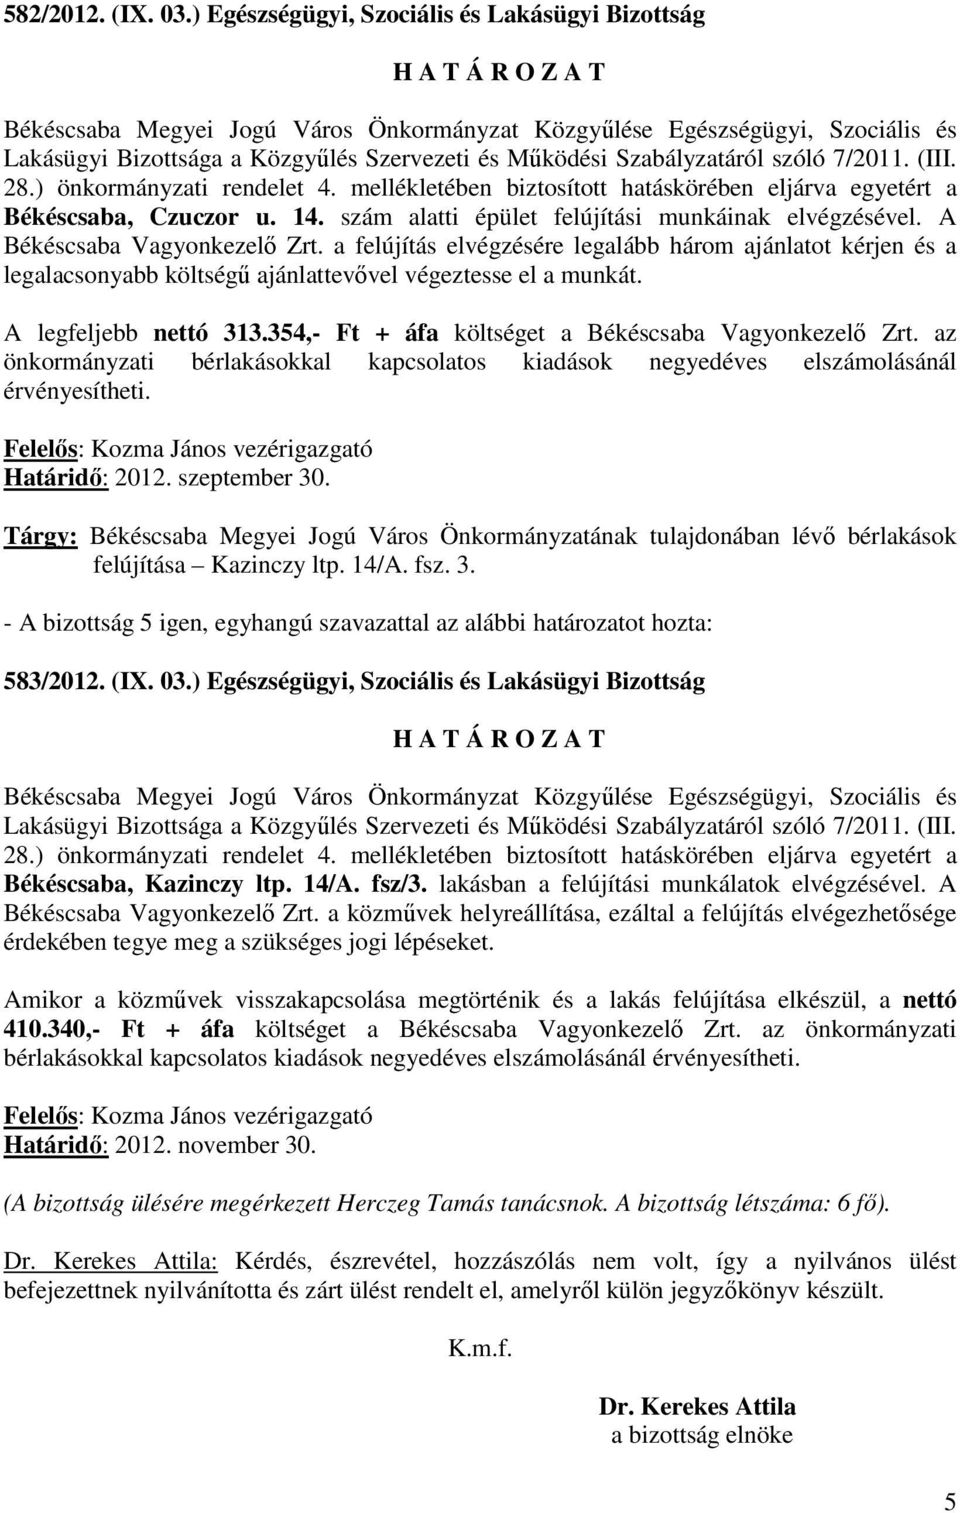 354,- Ft + áfa költséget a Békéscsaba Vagyonkezelı Zrt. az önkormányzati bérlakásokkal kapcsolatos kiadások negyedéves elszámolásánál érvényesítheti. felújítása Kazinczy ltp. 14/A. fsz. 3. 583/2012.